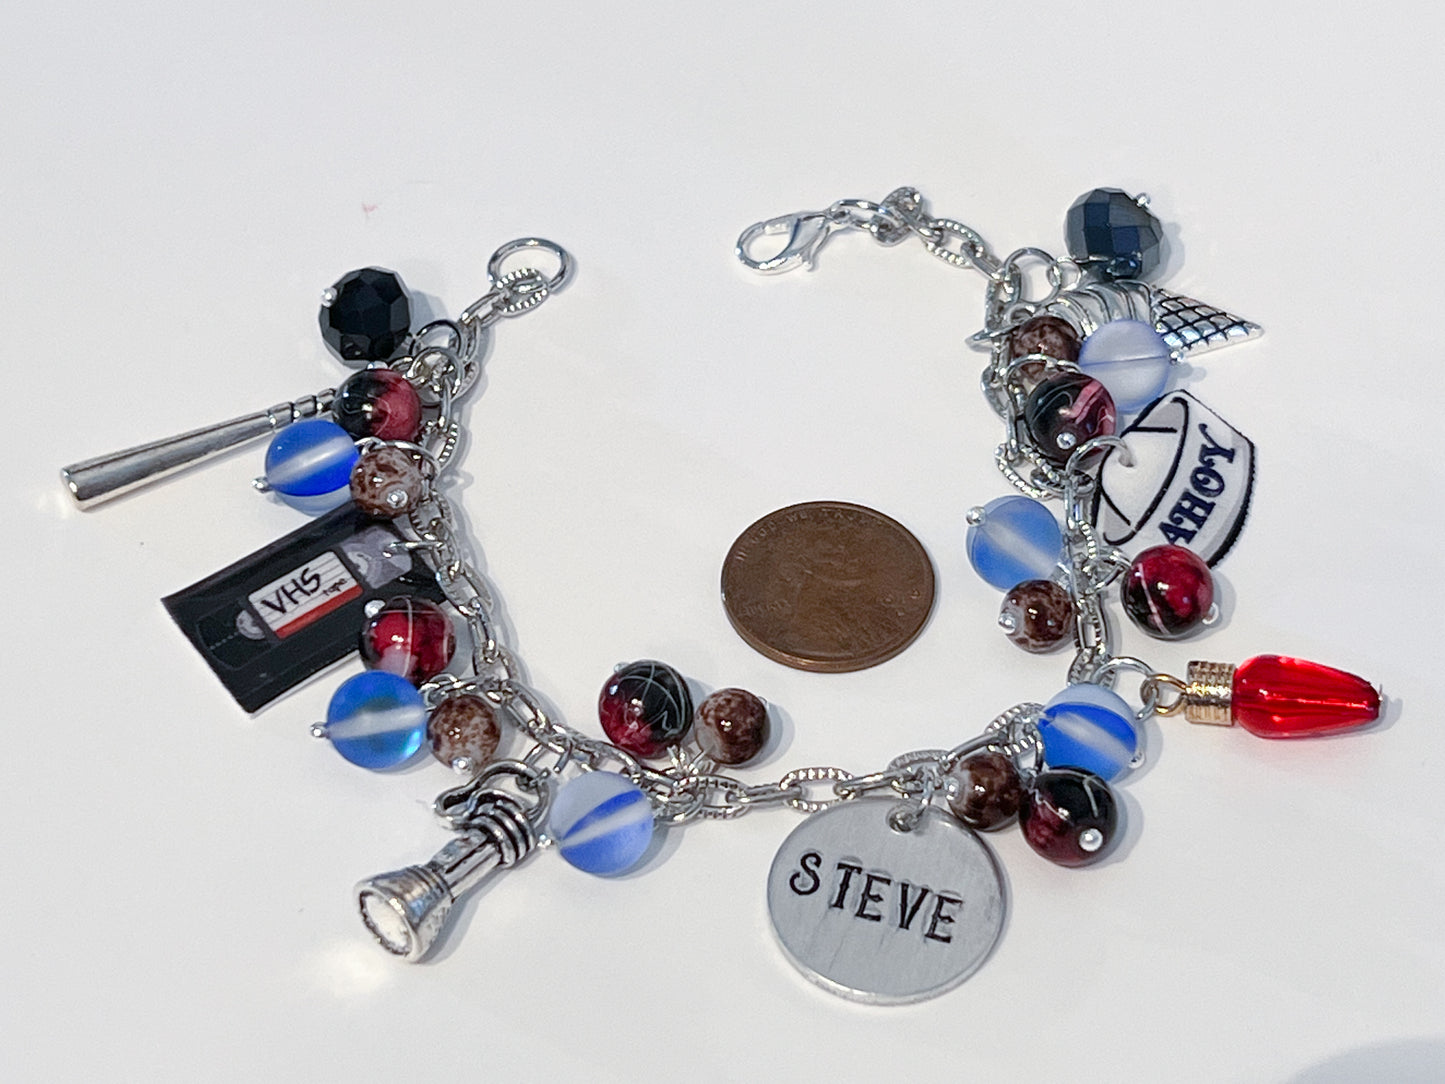 Eddie or Steve ST Inspired Bracelets